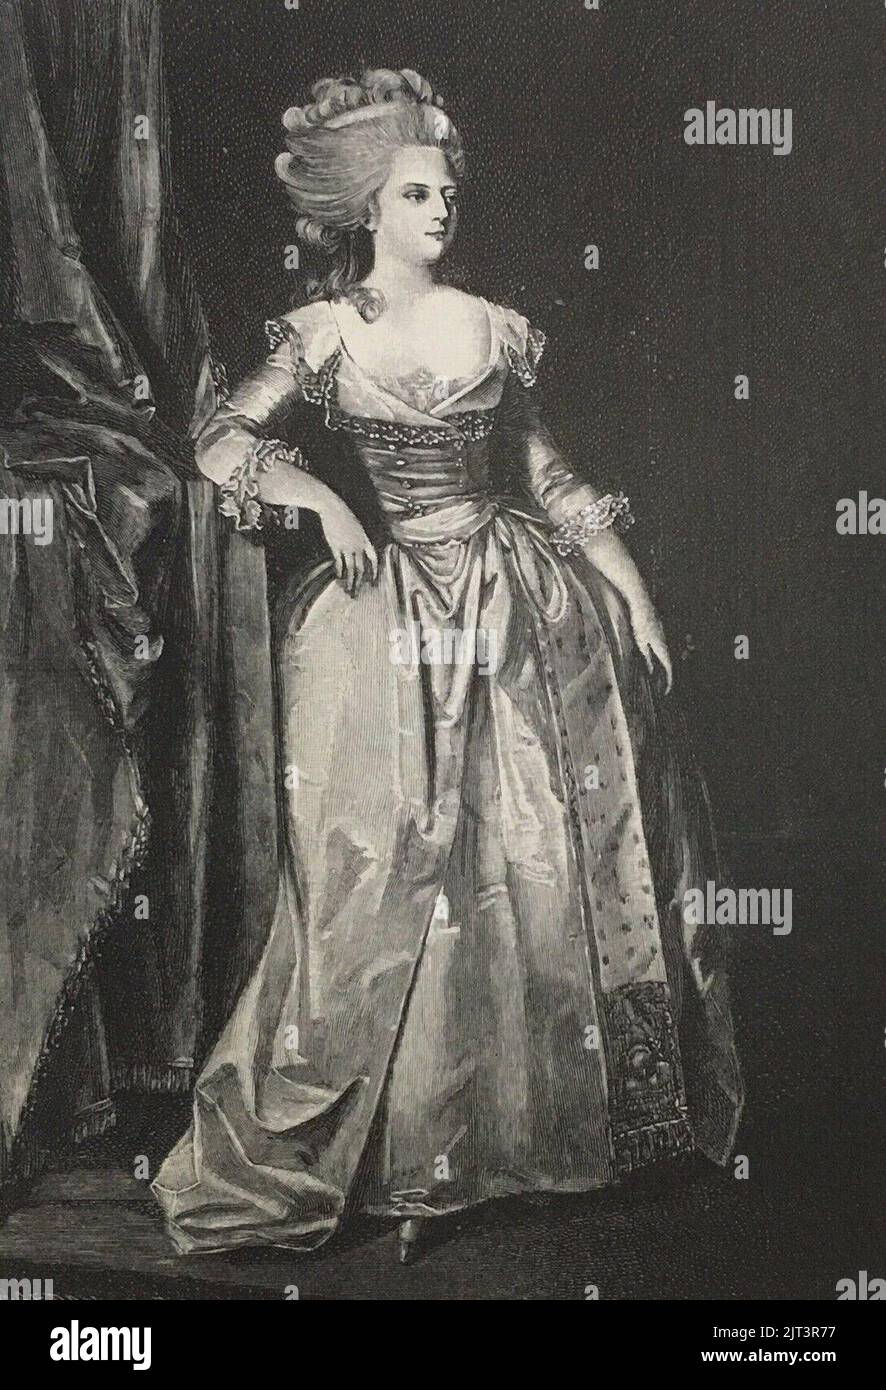 Tsaritsa Maria Feodorovna (Sophie Dorothea of Wurttemberg). Stock Photo